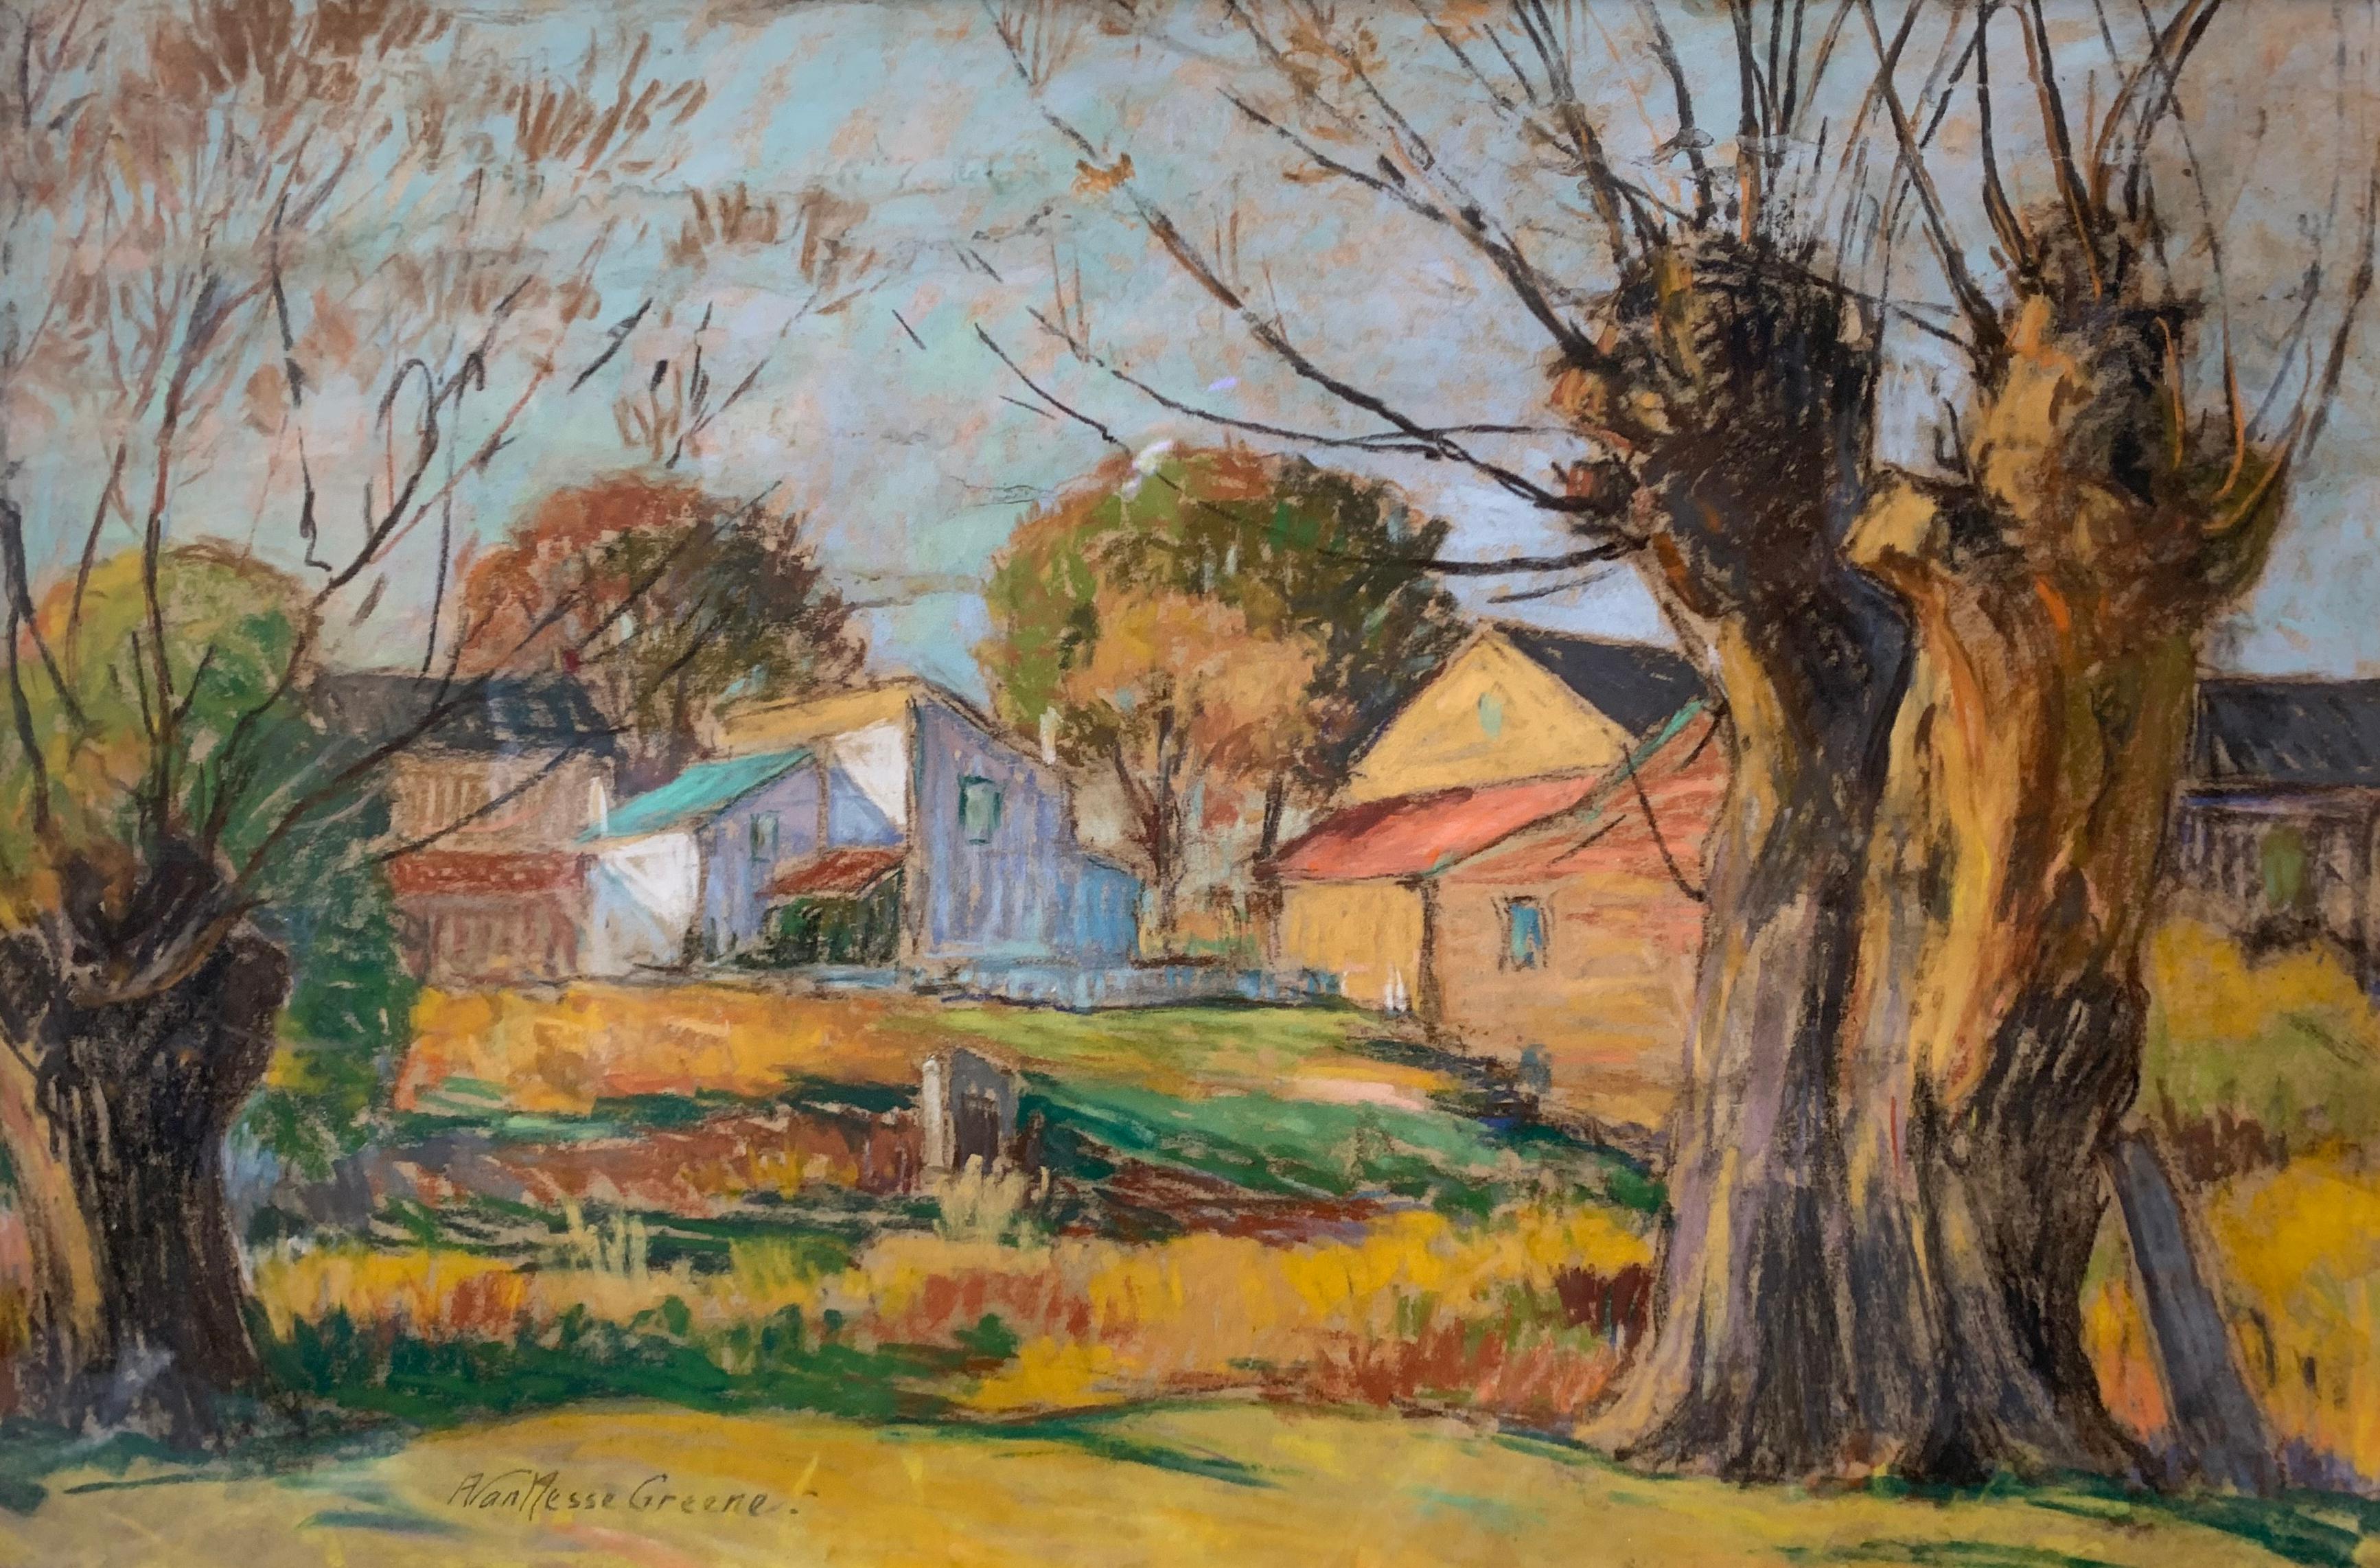 The Golden Hour, American Impressionist Landscape, Pastel on Paper, Framed